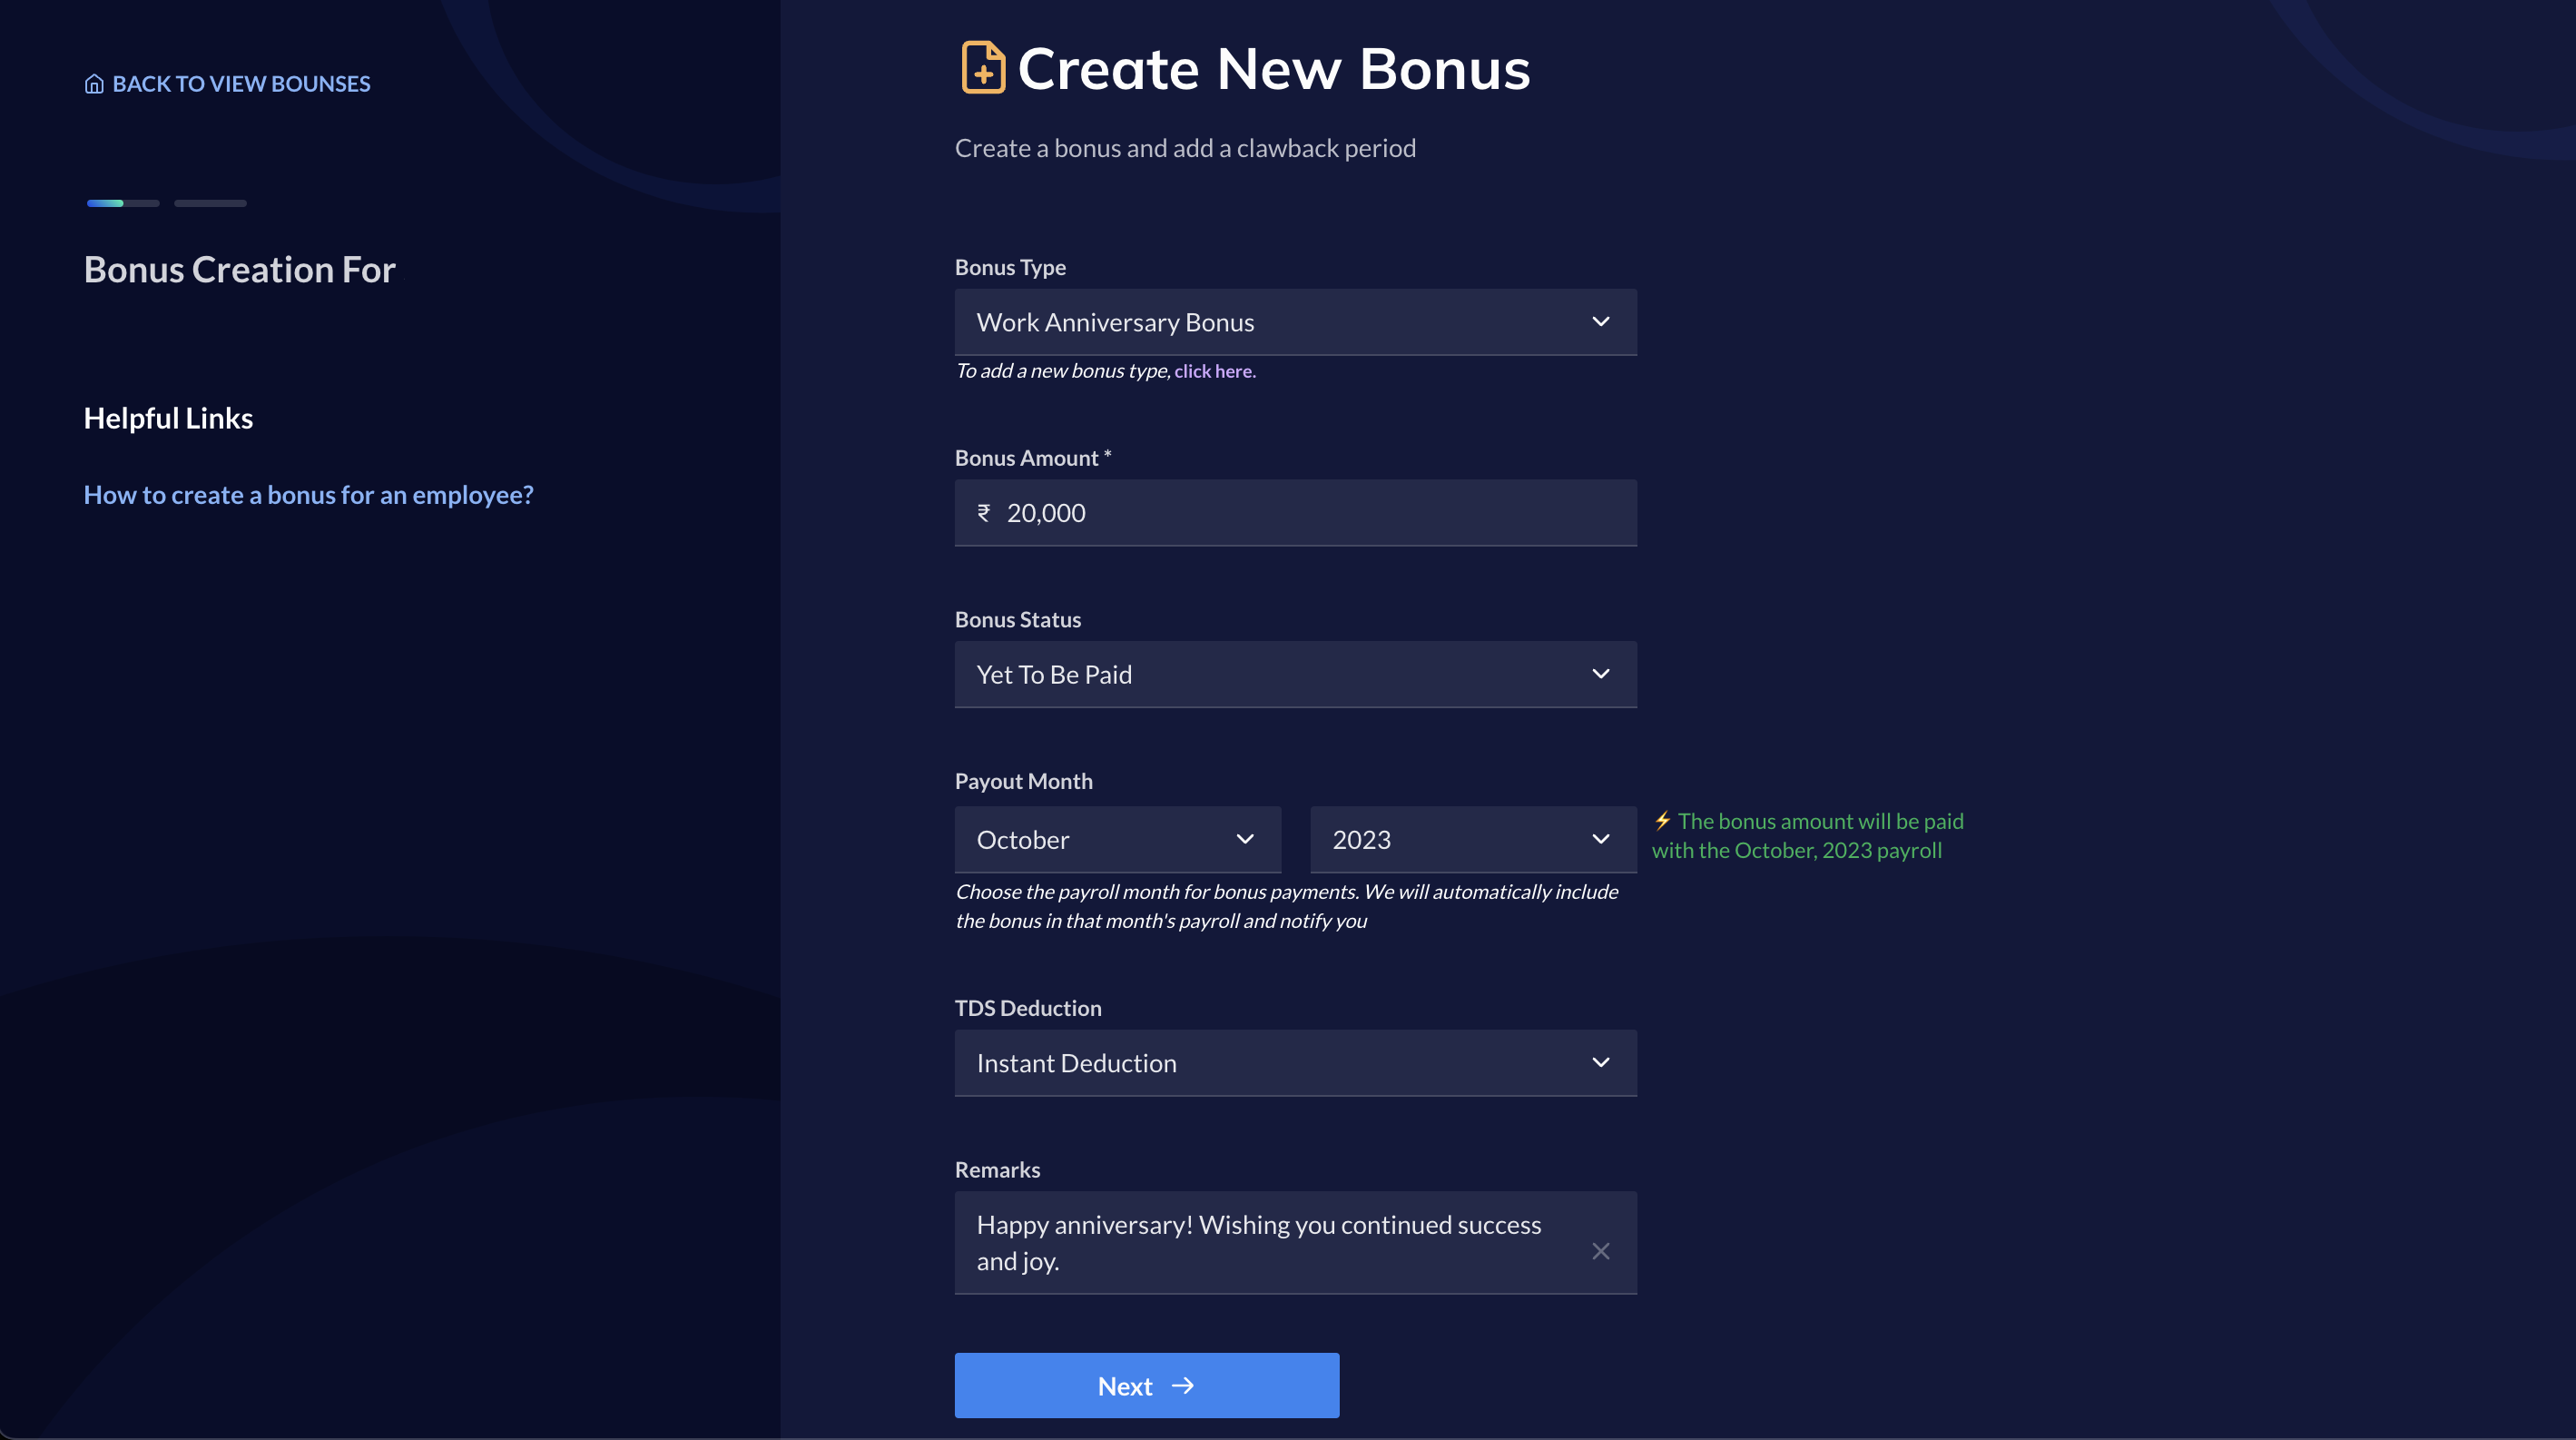 Add bonus details to create bonus on Payroll